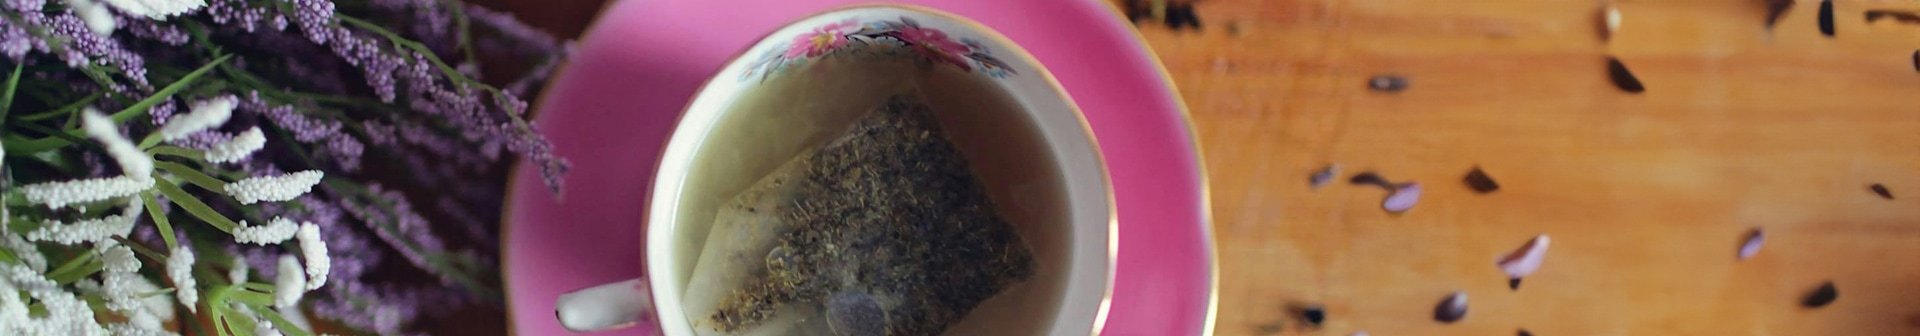 Tasse Tee neben der ein Strauß Lavendel liegt